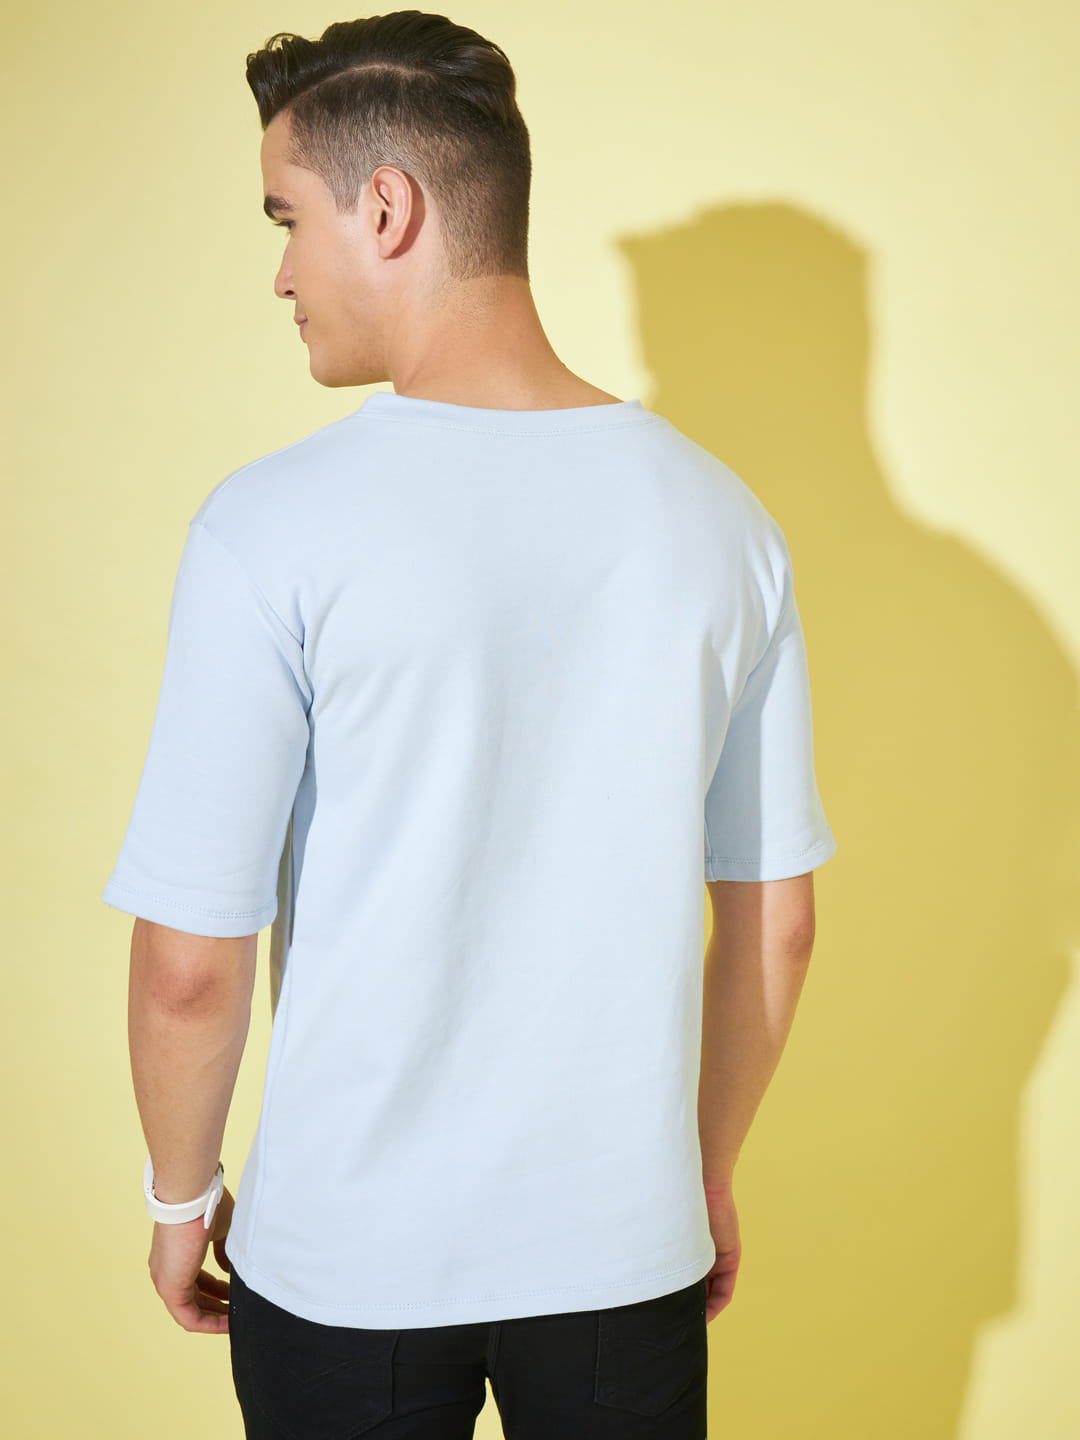 Serene Simplicity: Plain Light Blue Men's T-Shirt